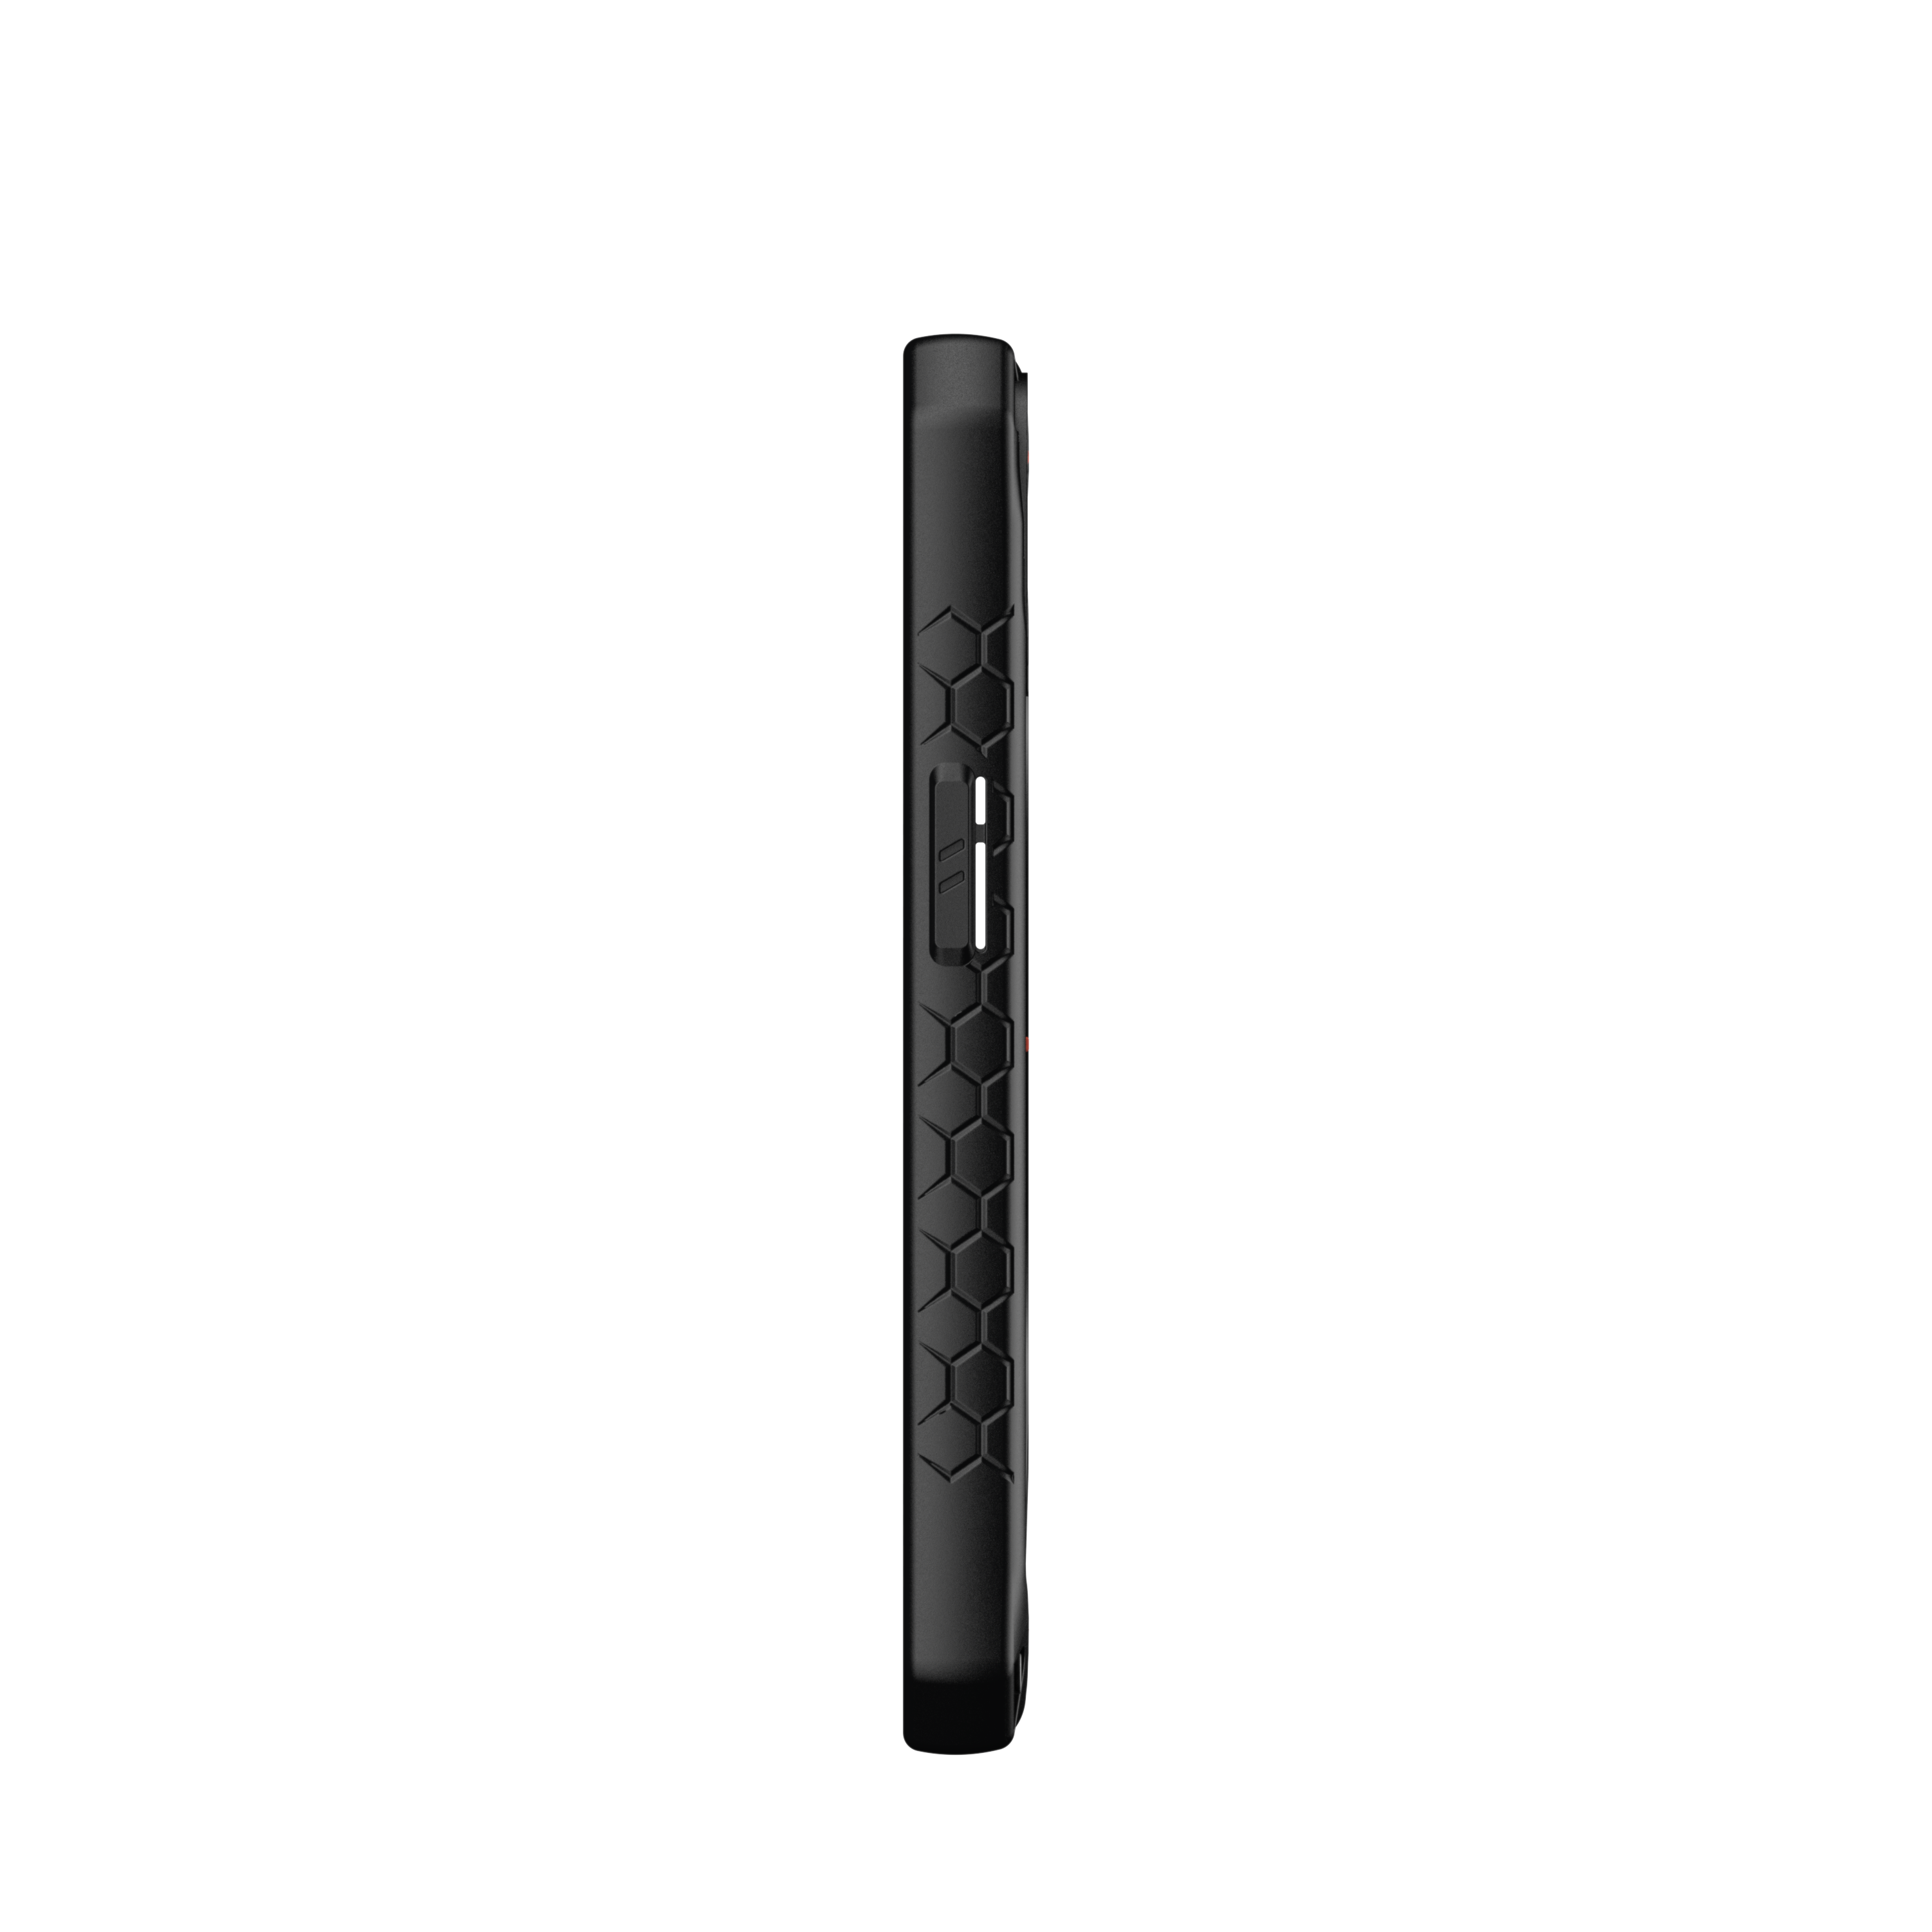 Ốp Lưng dành cho iPhone 13/13 Mini/13 Pro/13 Pro Max UAG Monarch Kevlar Series - Hàng Chính Hãng